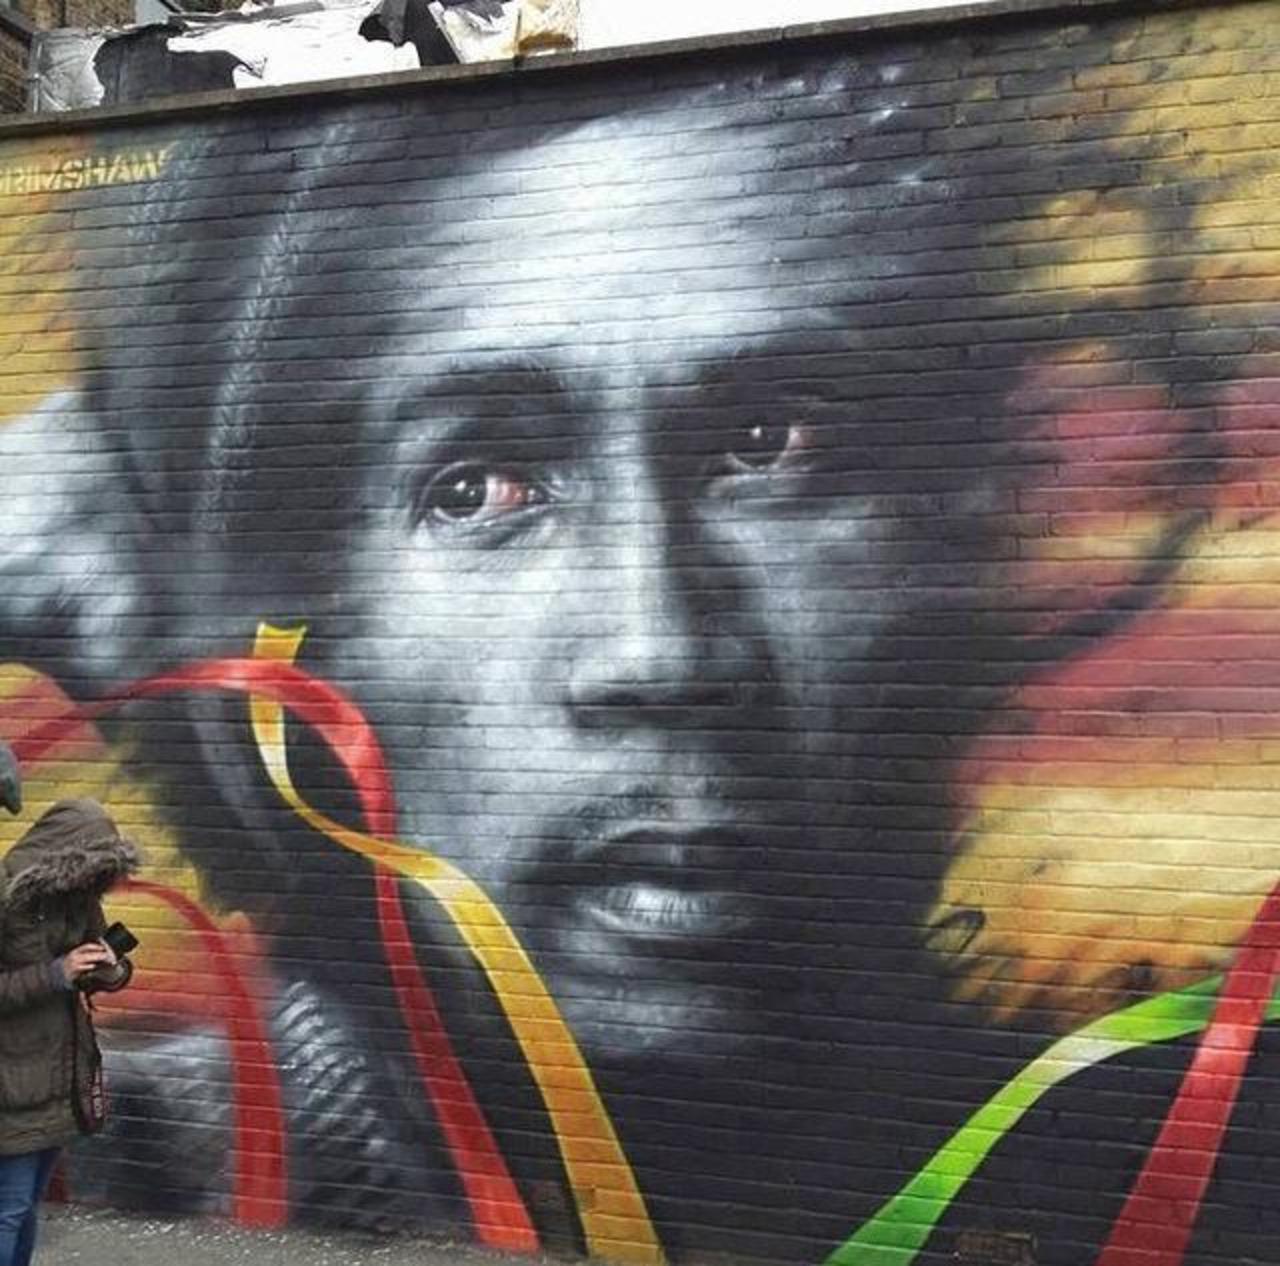 Bob Marley Street Art portrait by Dale Grimshaw in London 

#art #arte #graffiti #streetart http://t.co/V2C0XJvAcJ